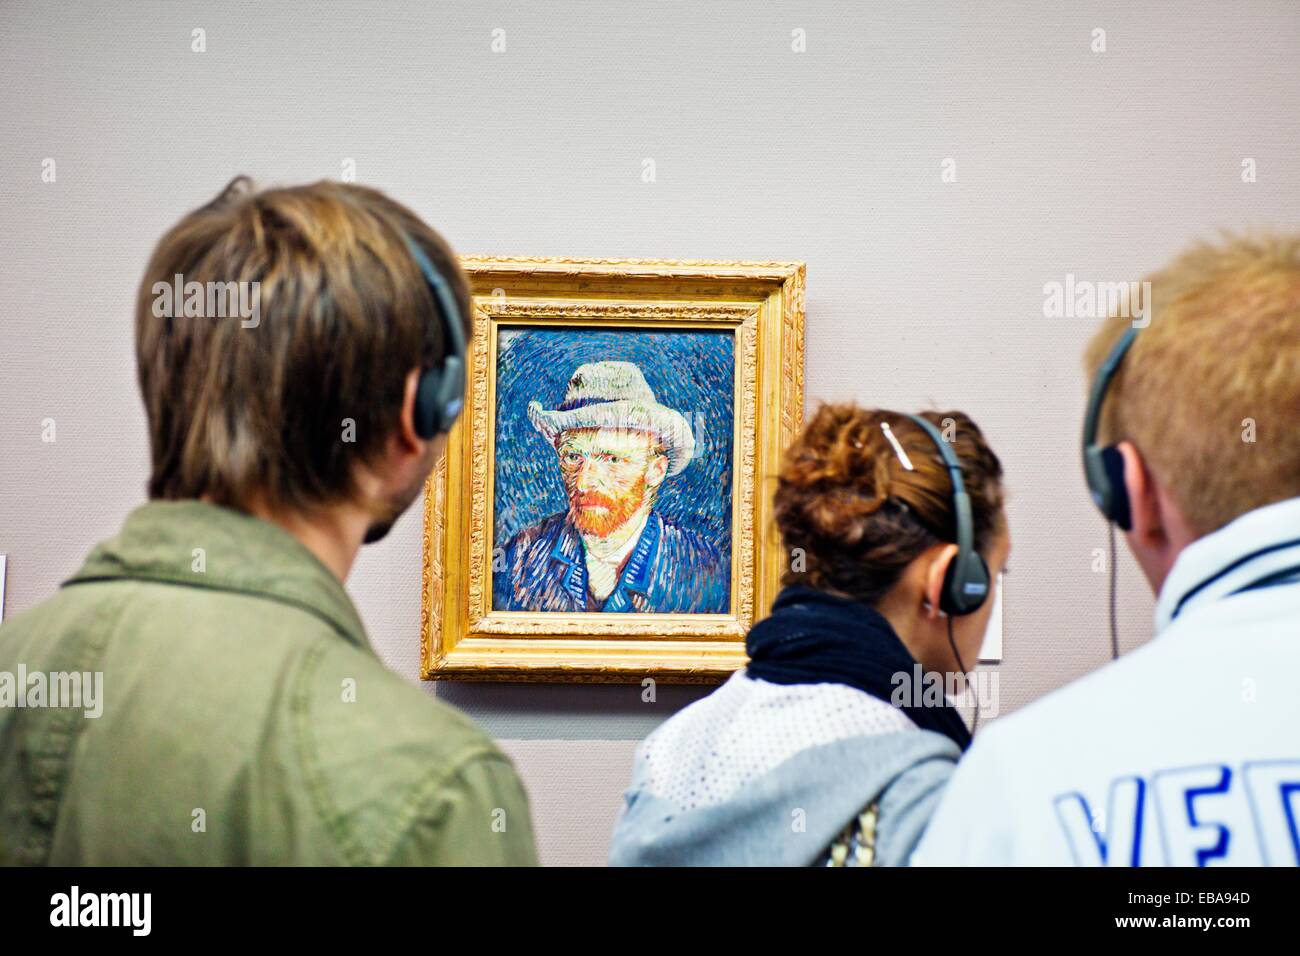 Ritratto Di Auto 1887, Vincent Van Gogh 1853-1890, il Van Gogh Museum di Amsterdam, Paesi Bassi. Foto Stock